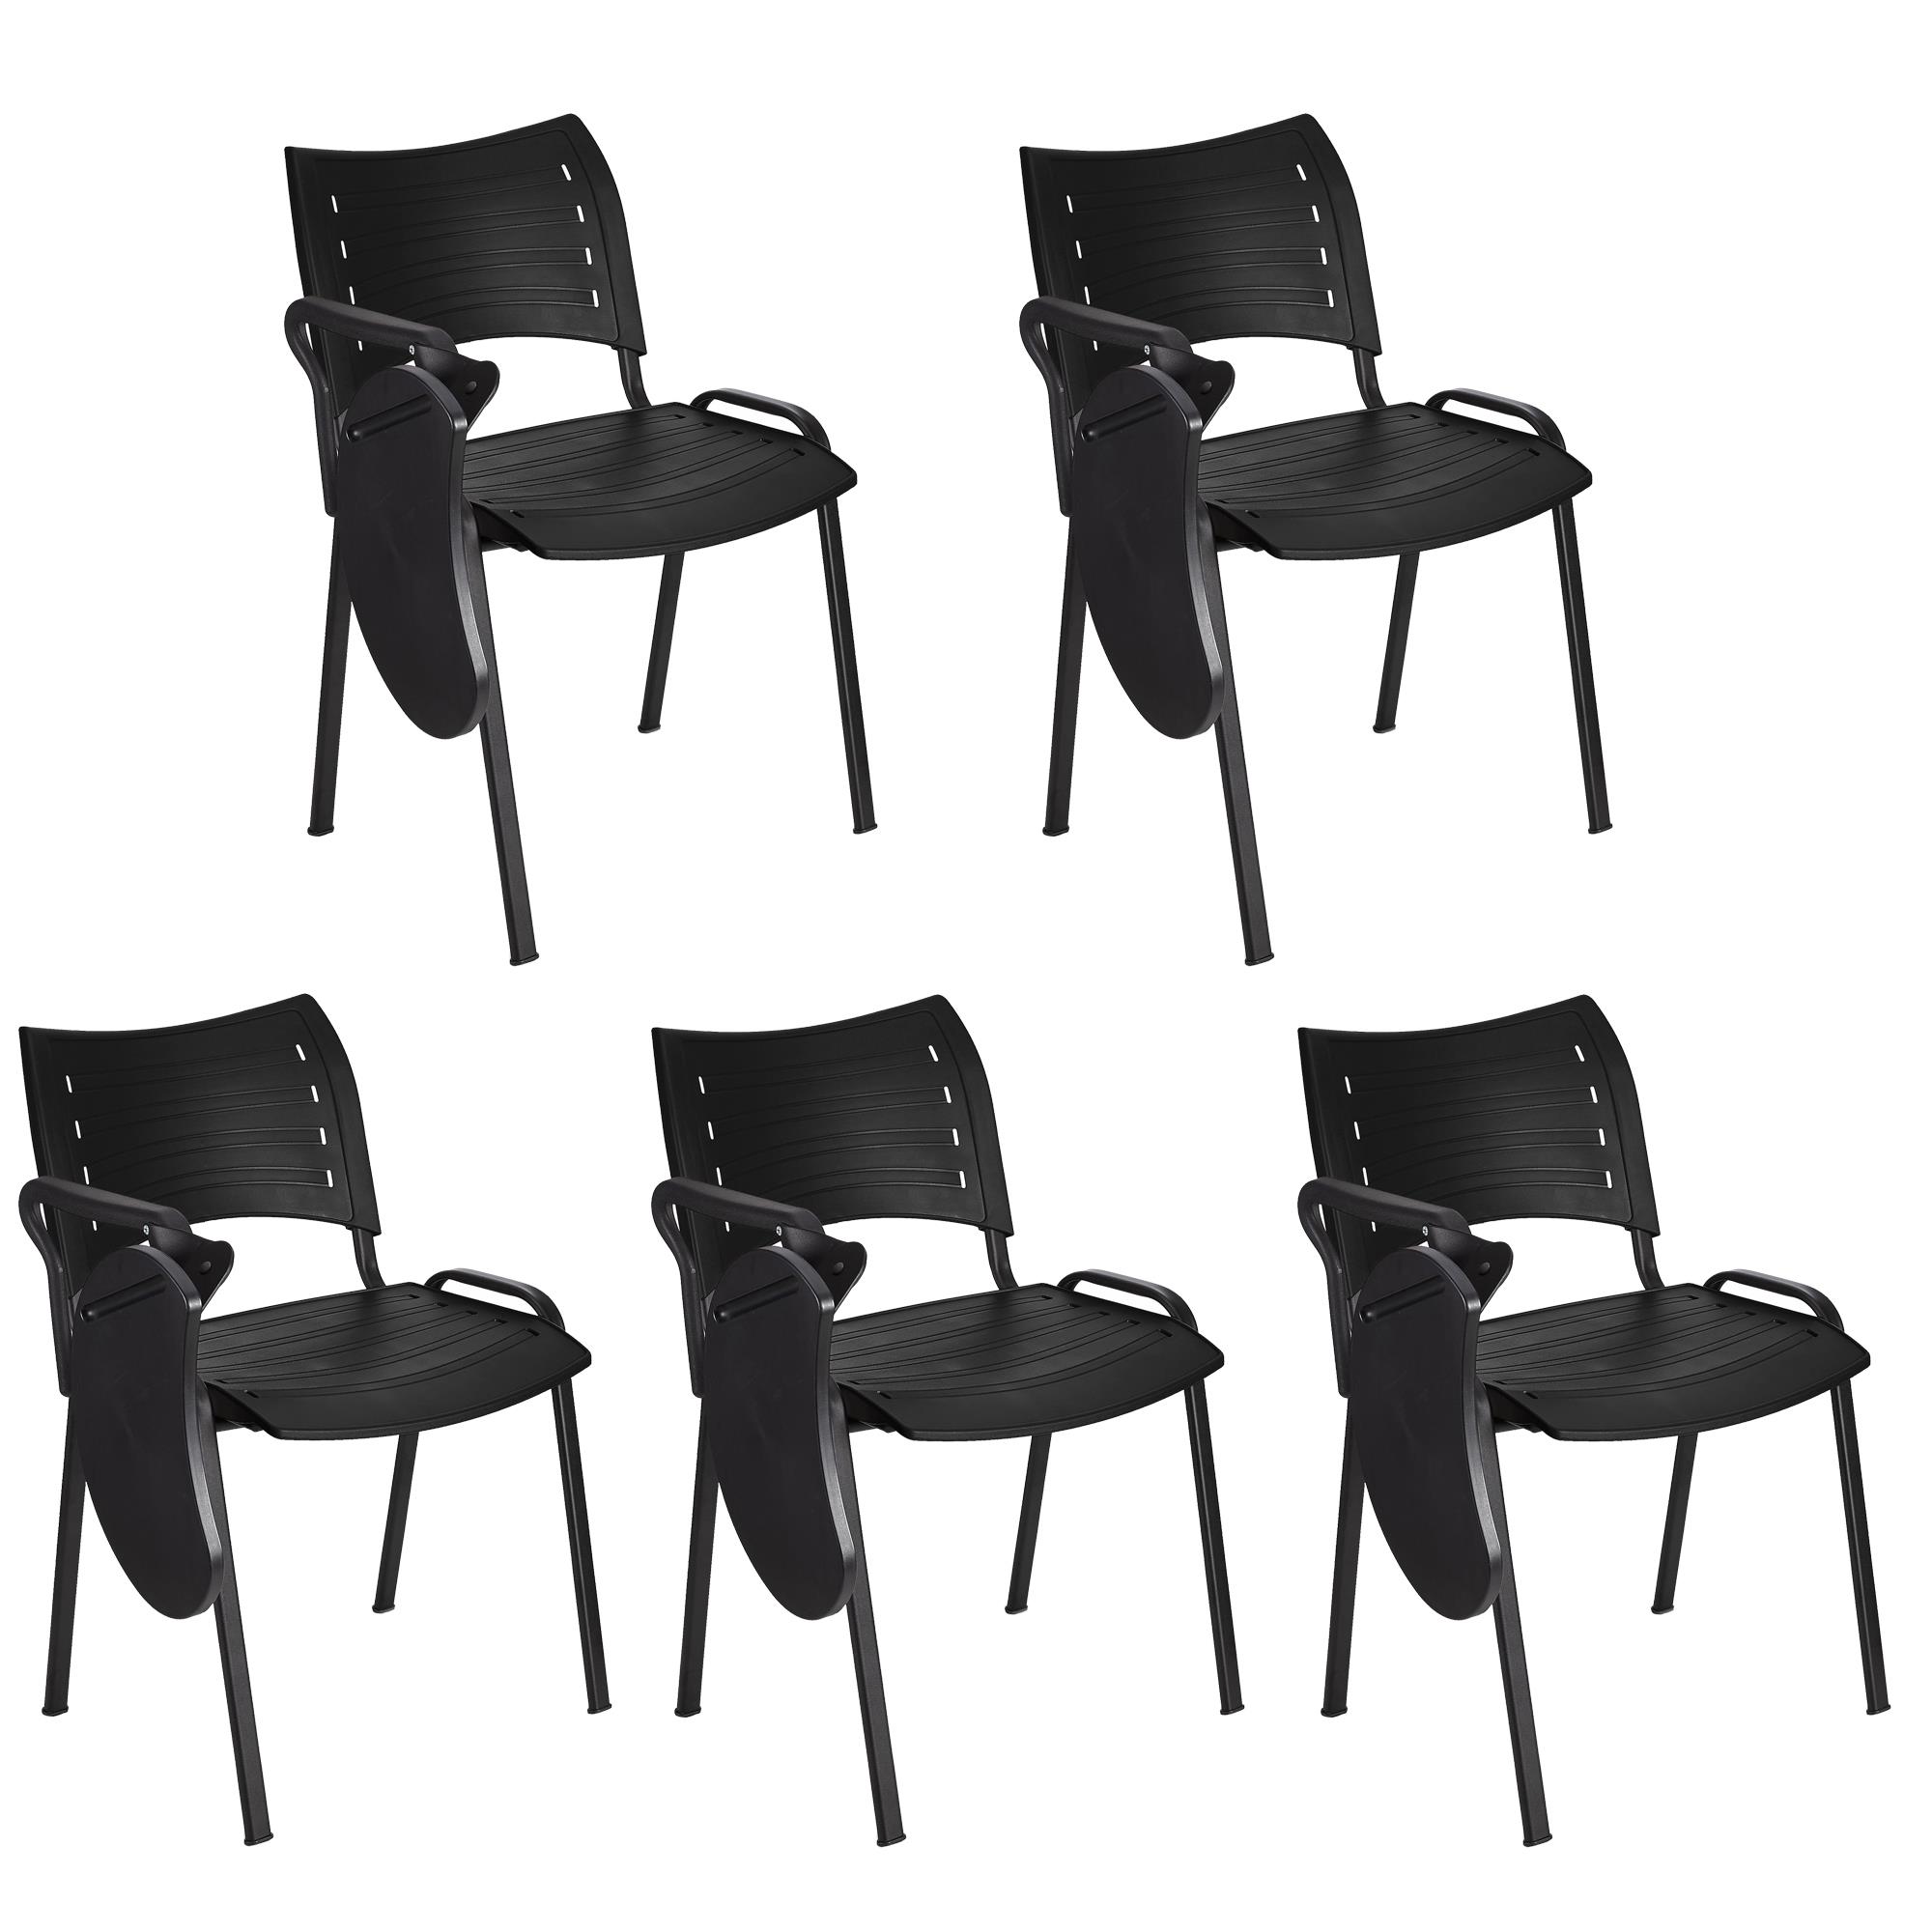 Lote 5 Cadeiras de Visita ELVA COM PALMATÓRIA, Confortável, Pernas Pretas, Cor Preto